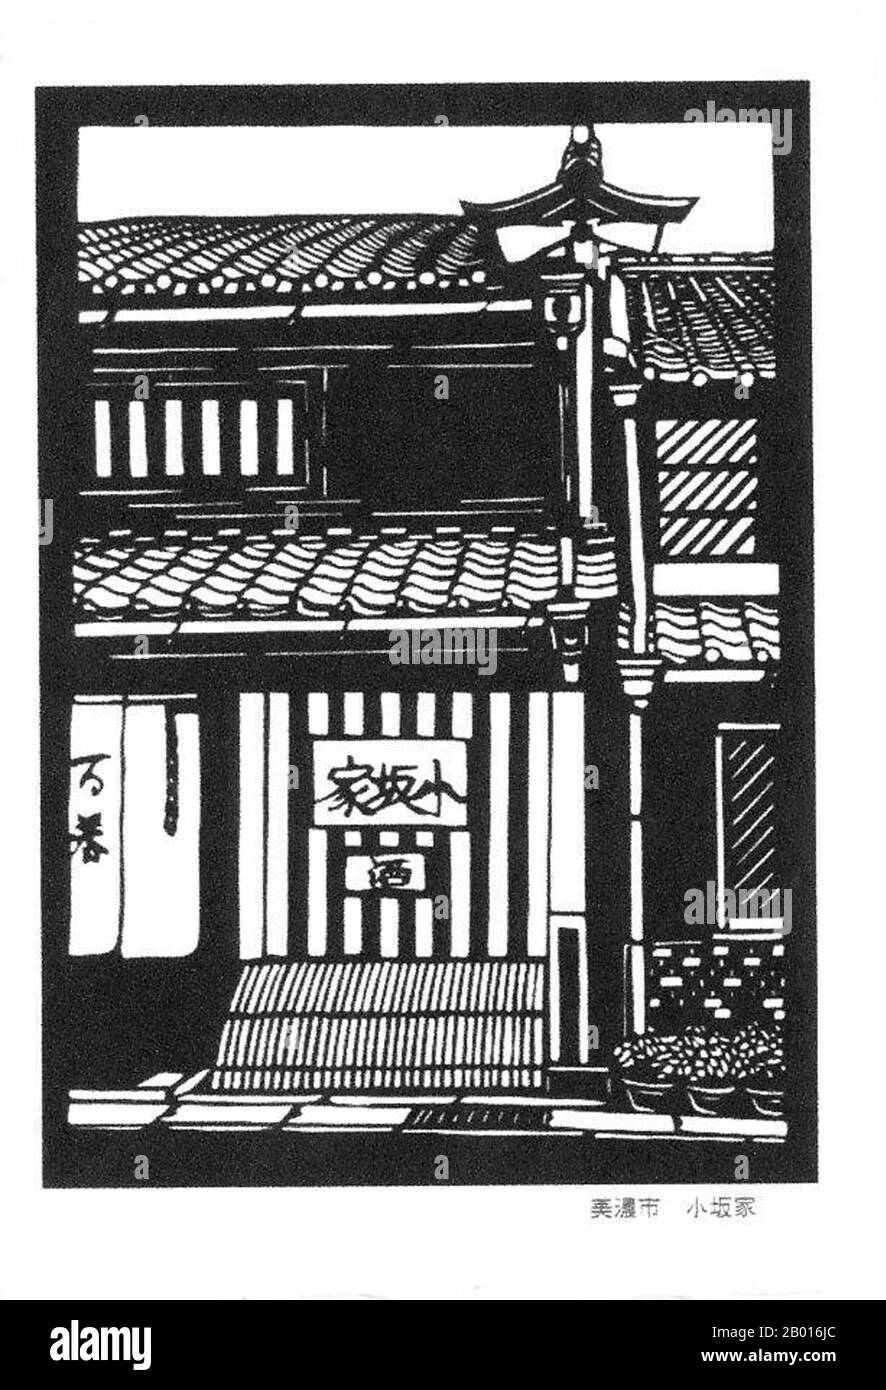 Japon: 'Anciens bâtiments de la période Edo dans la ville de Mino, préfecture de Gifu'.Imprimé Ukiyo-e sur bois, début du XXe siècle.Mino est une ville située dans la préfecture de Gifu, au centre du Japon.La ville est réputée pour son papier de washi Mino japonais traditionnel et ses rues, qui sont dans le style du début de l'époque Edo (1603-1868). Banque D'Images